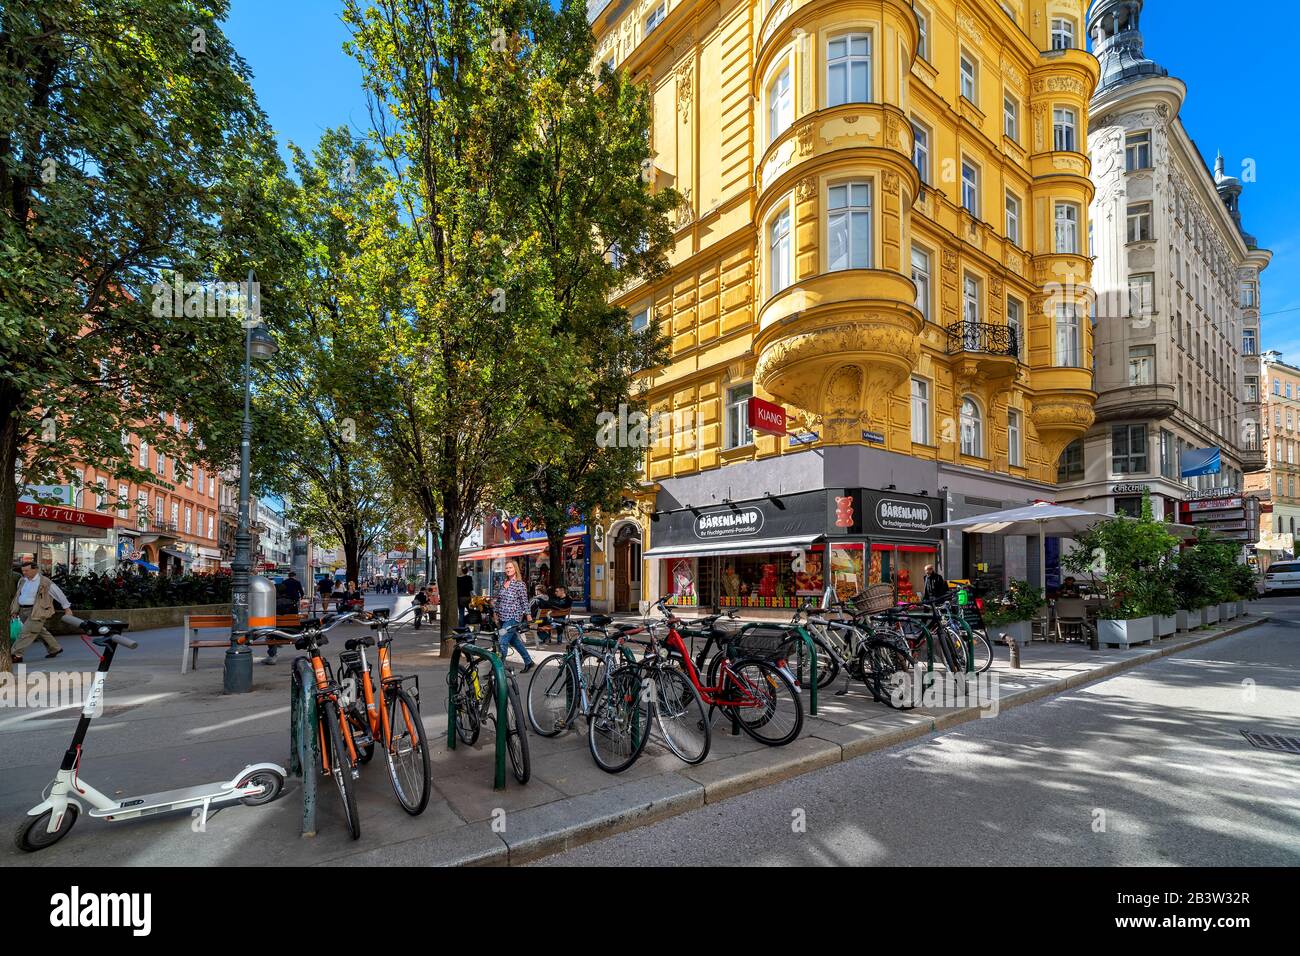 Fahrräder auf der schmalen Straße und typische historische Gebäude in der Wiener Altstadt - Hauptstadt und größte Stadt Österreichs. Stockfoto